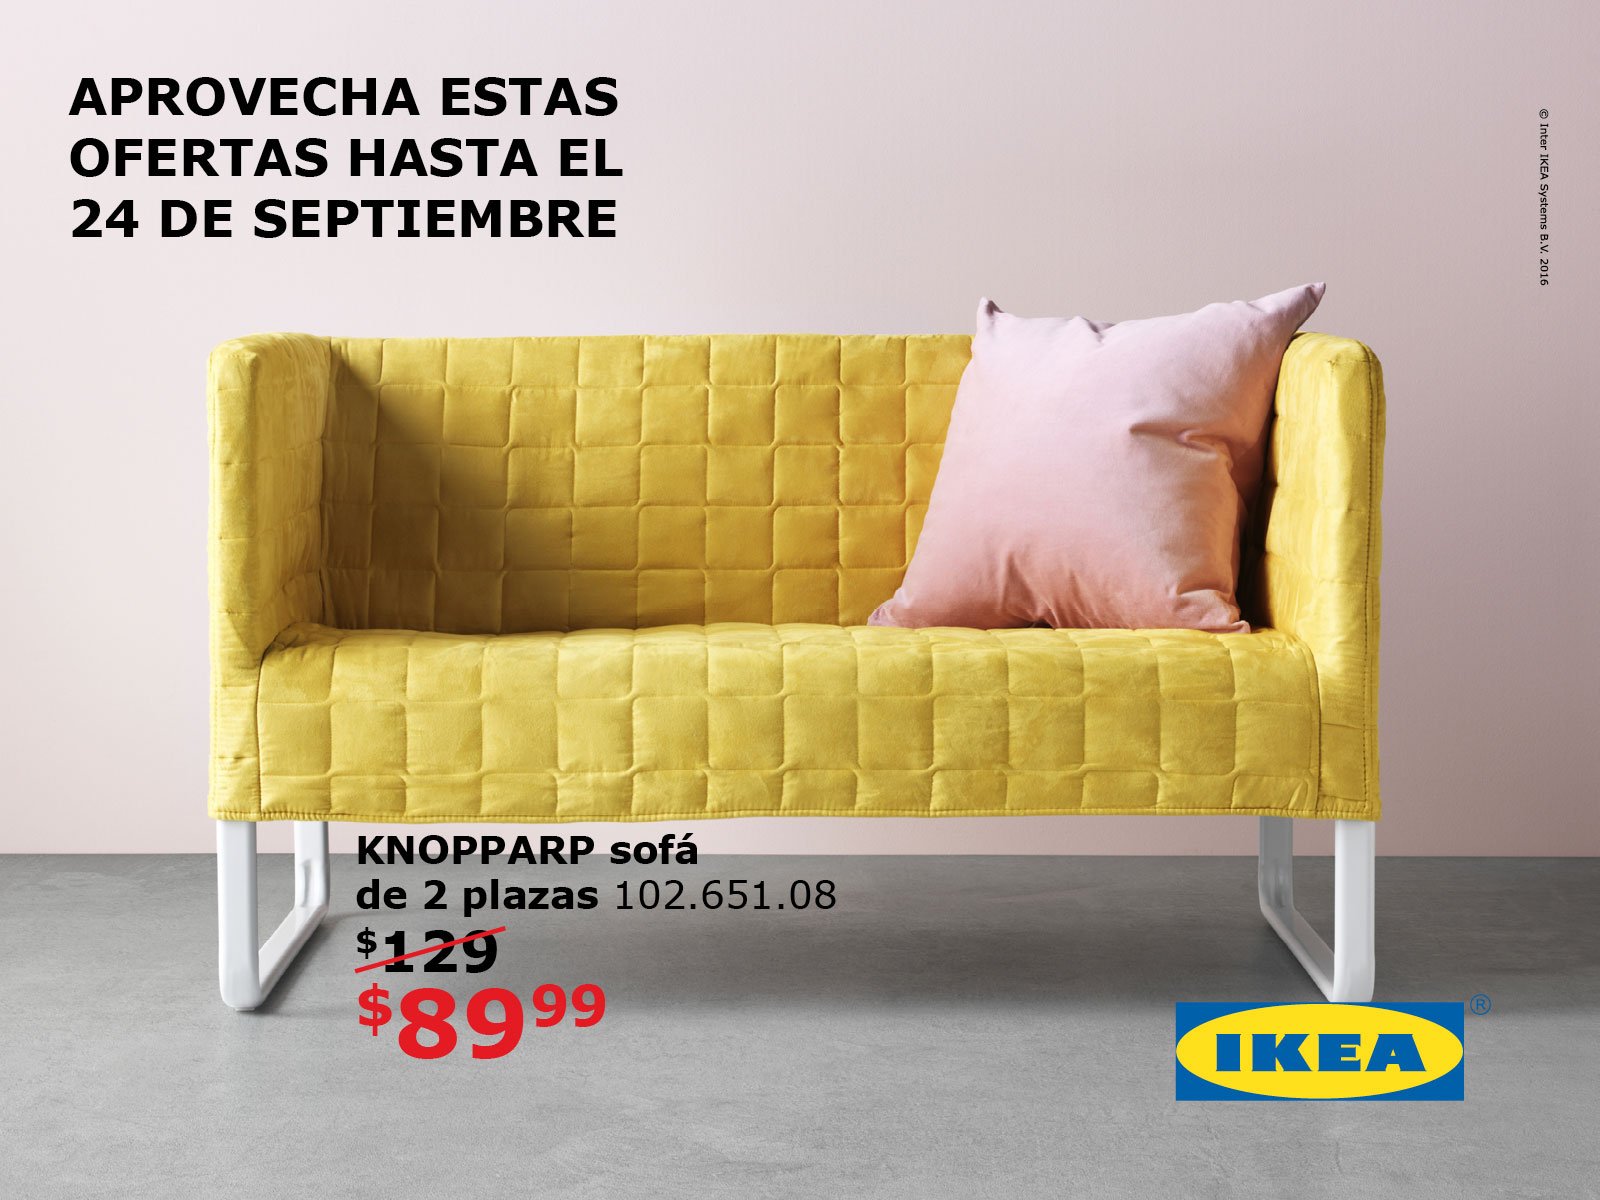 IKEA Puerto Rico on Twitter: 